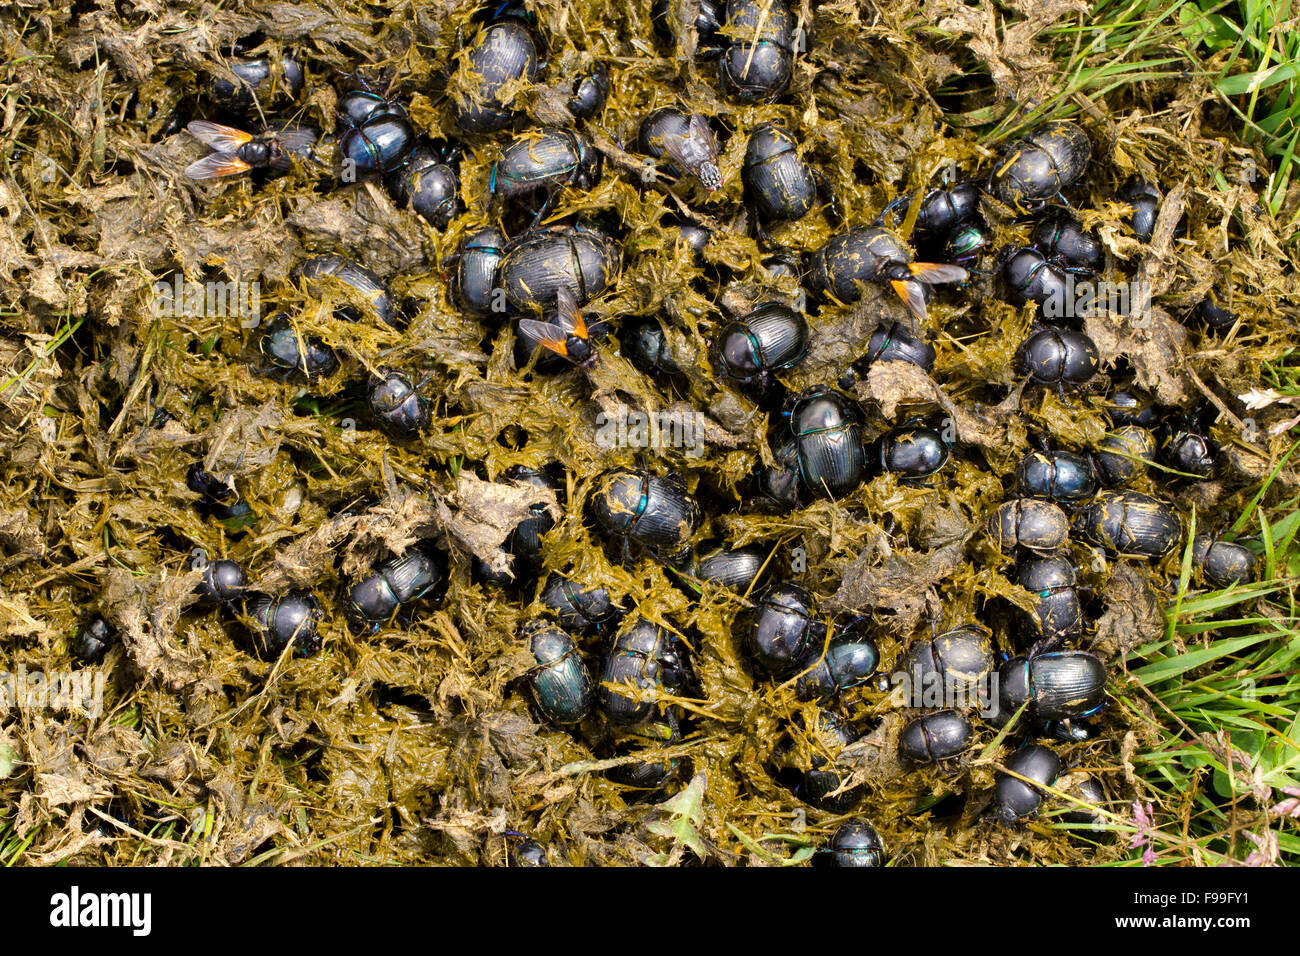 Los escarabajos (varias especies) Geotrupes adultos aglutinados en estiércol de vaca fresco desde el primer ganado en una pradera alpina. Foto de stock